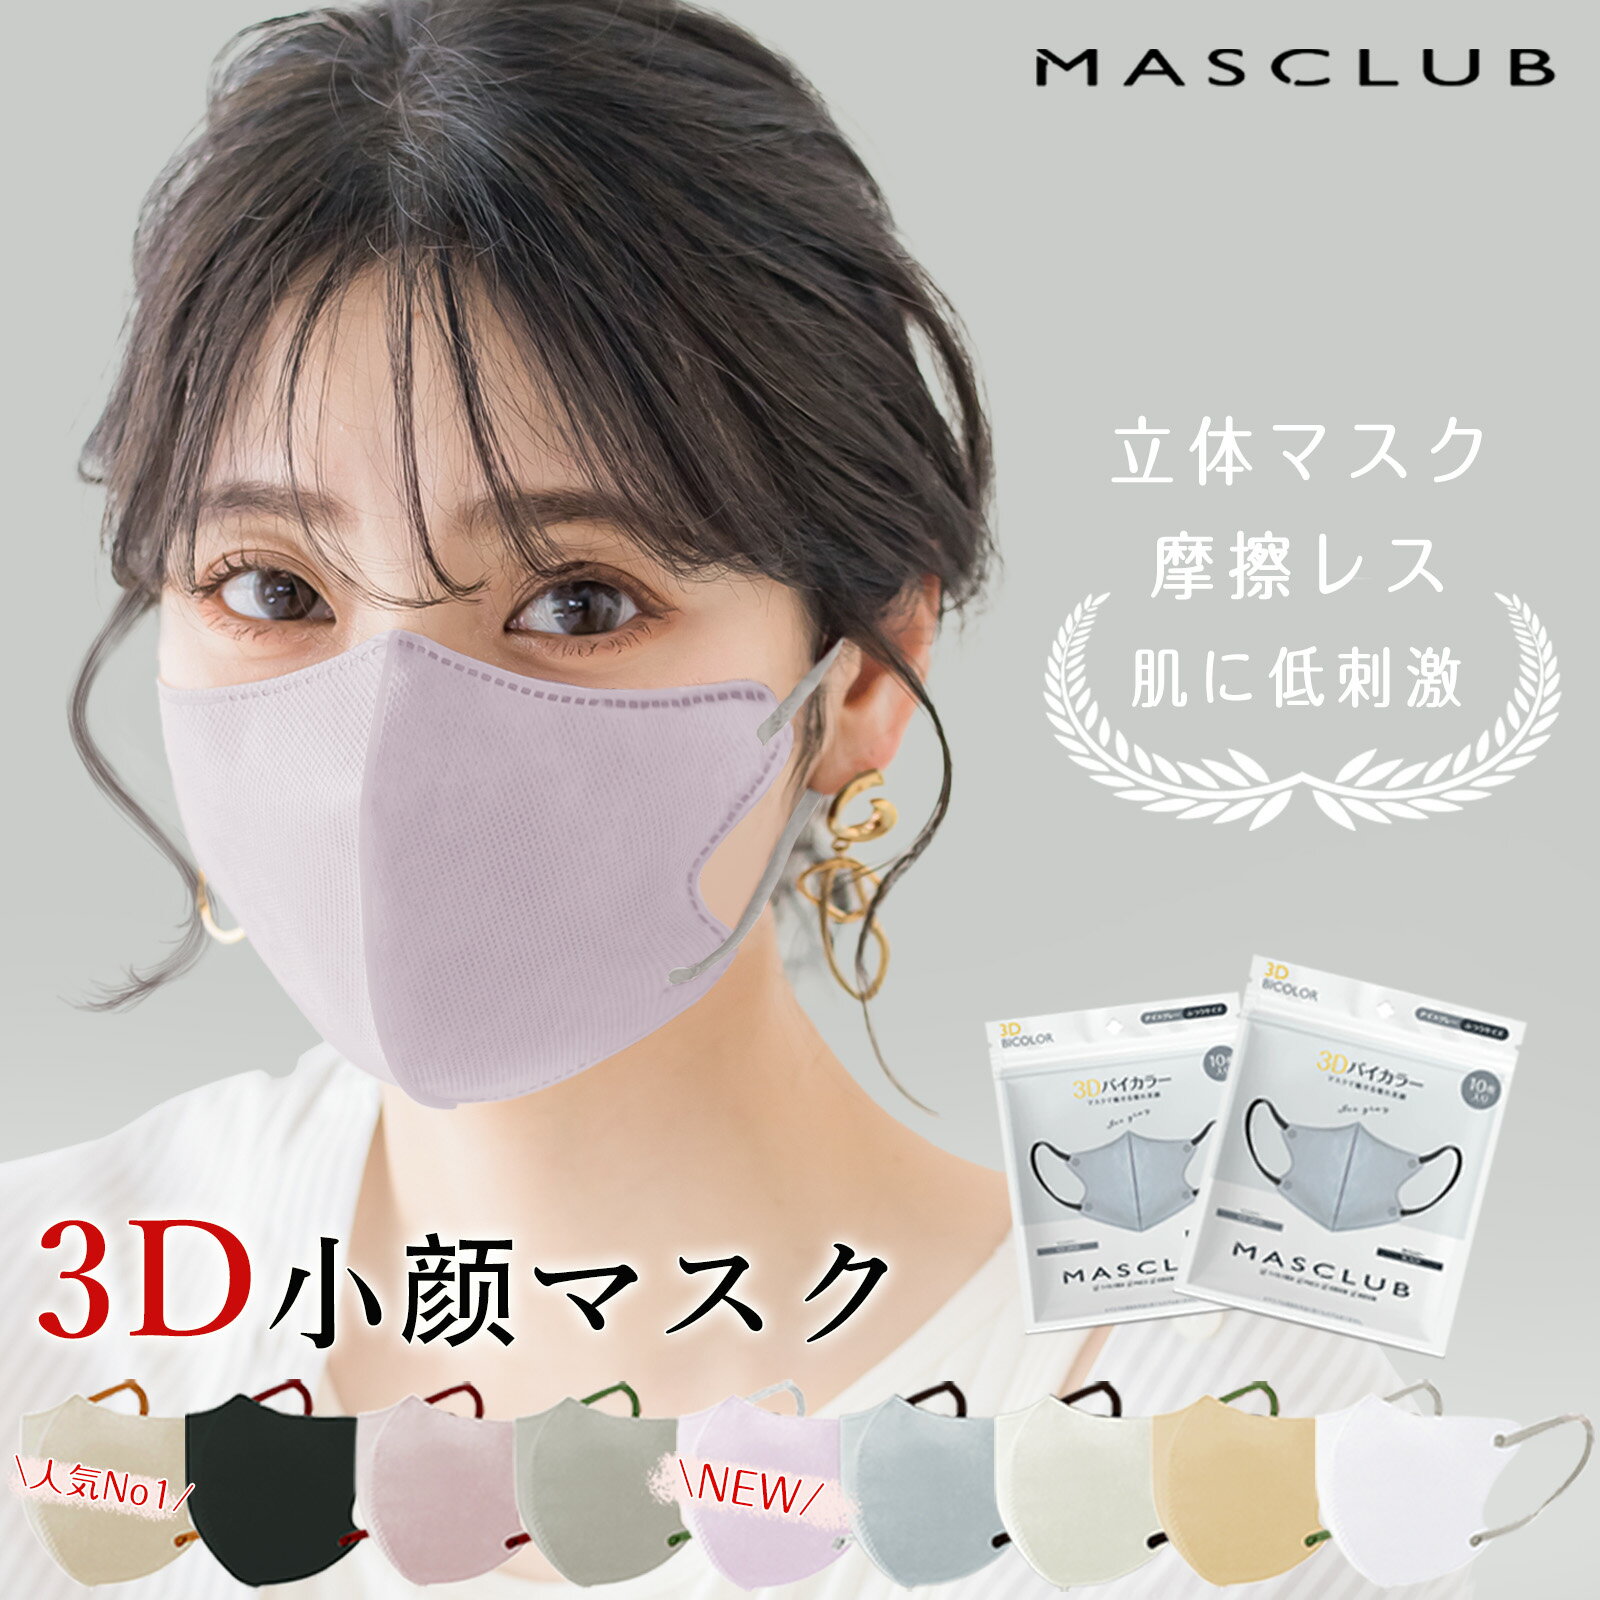 【新感覚3Dマスク★秋